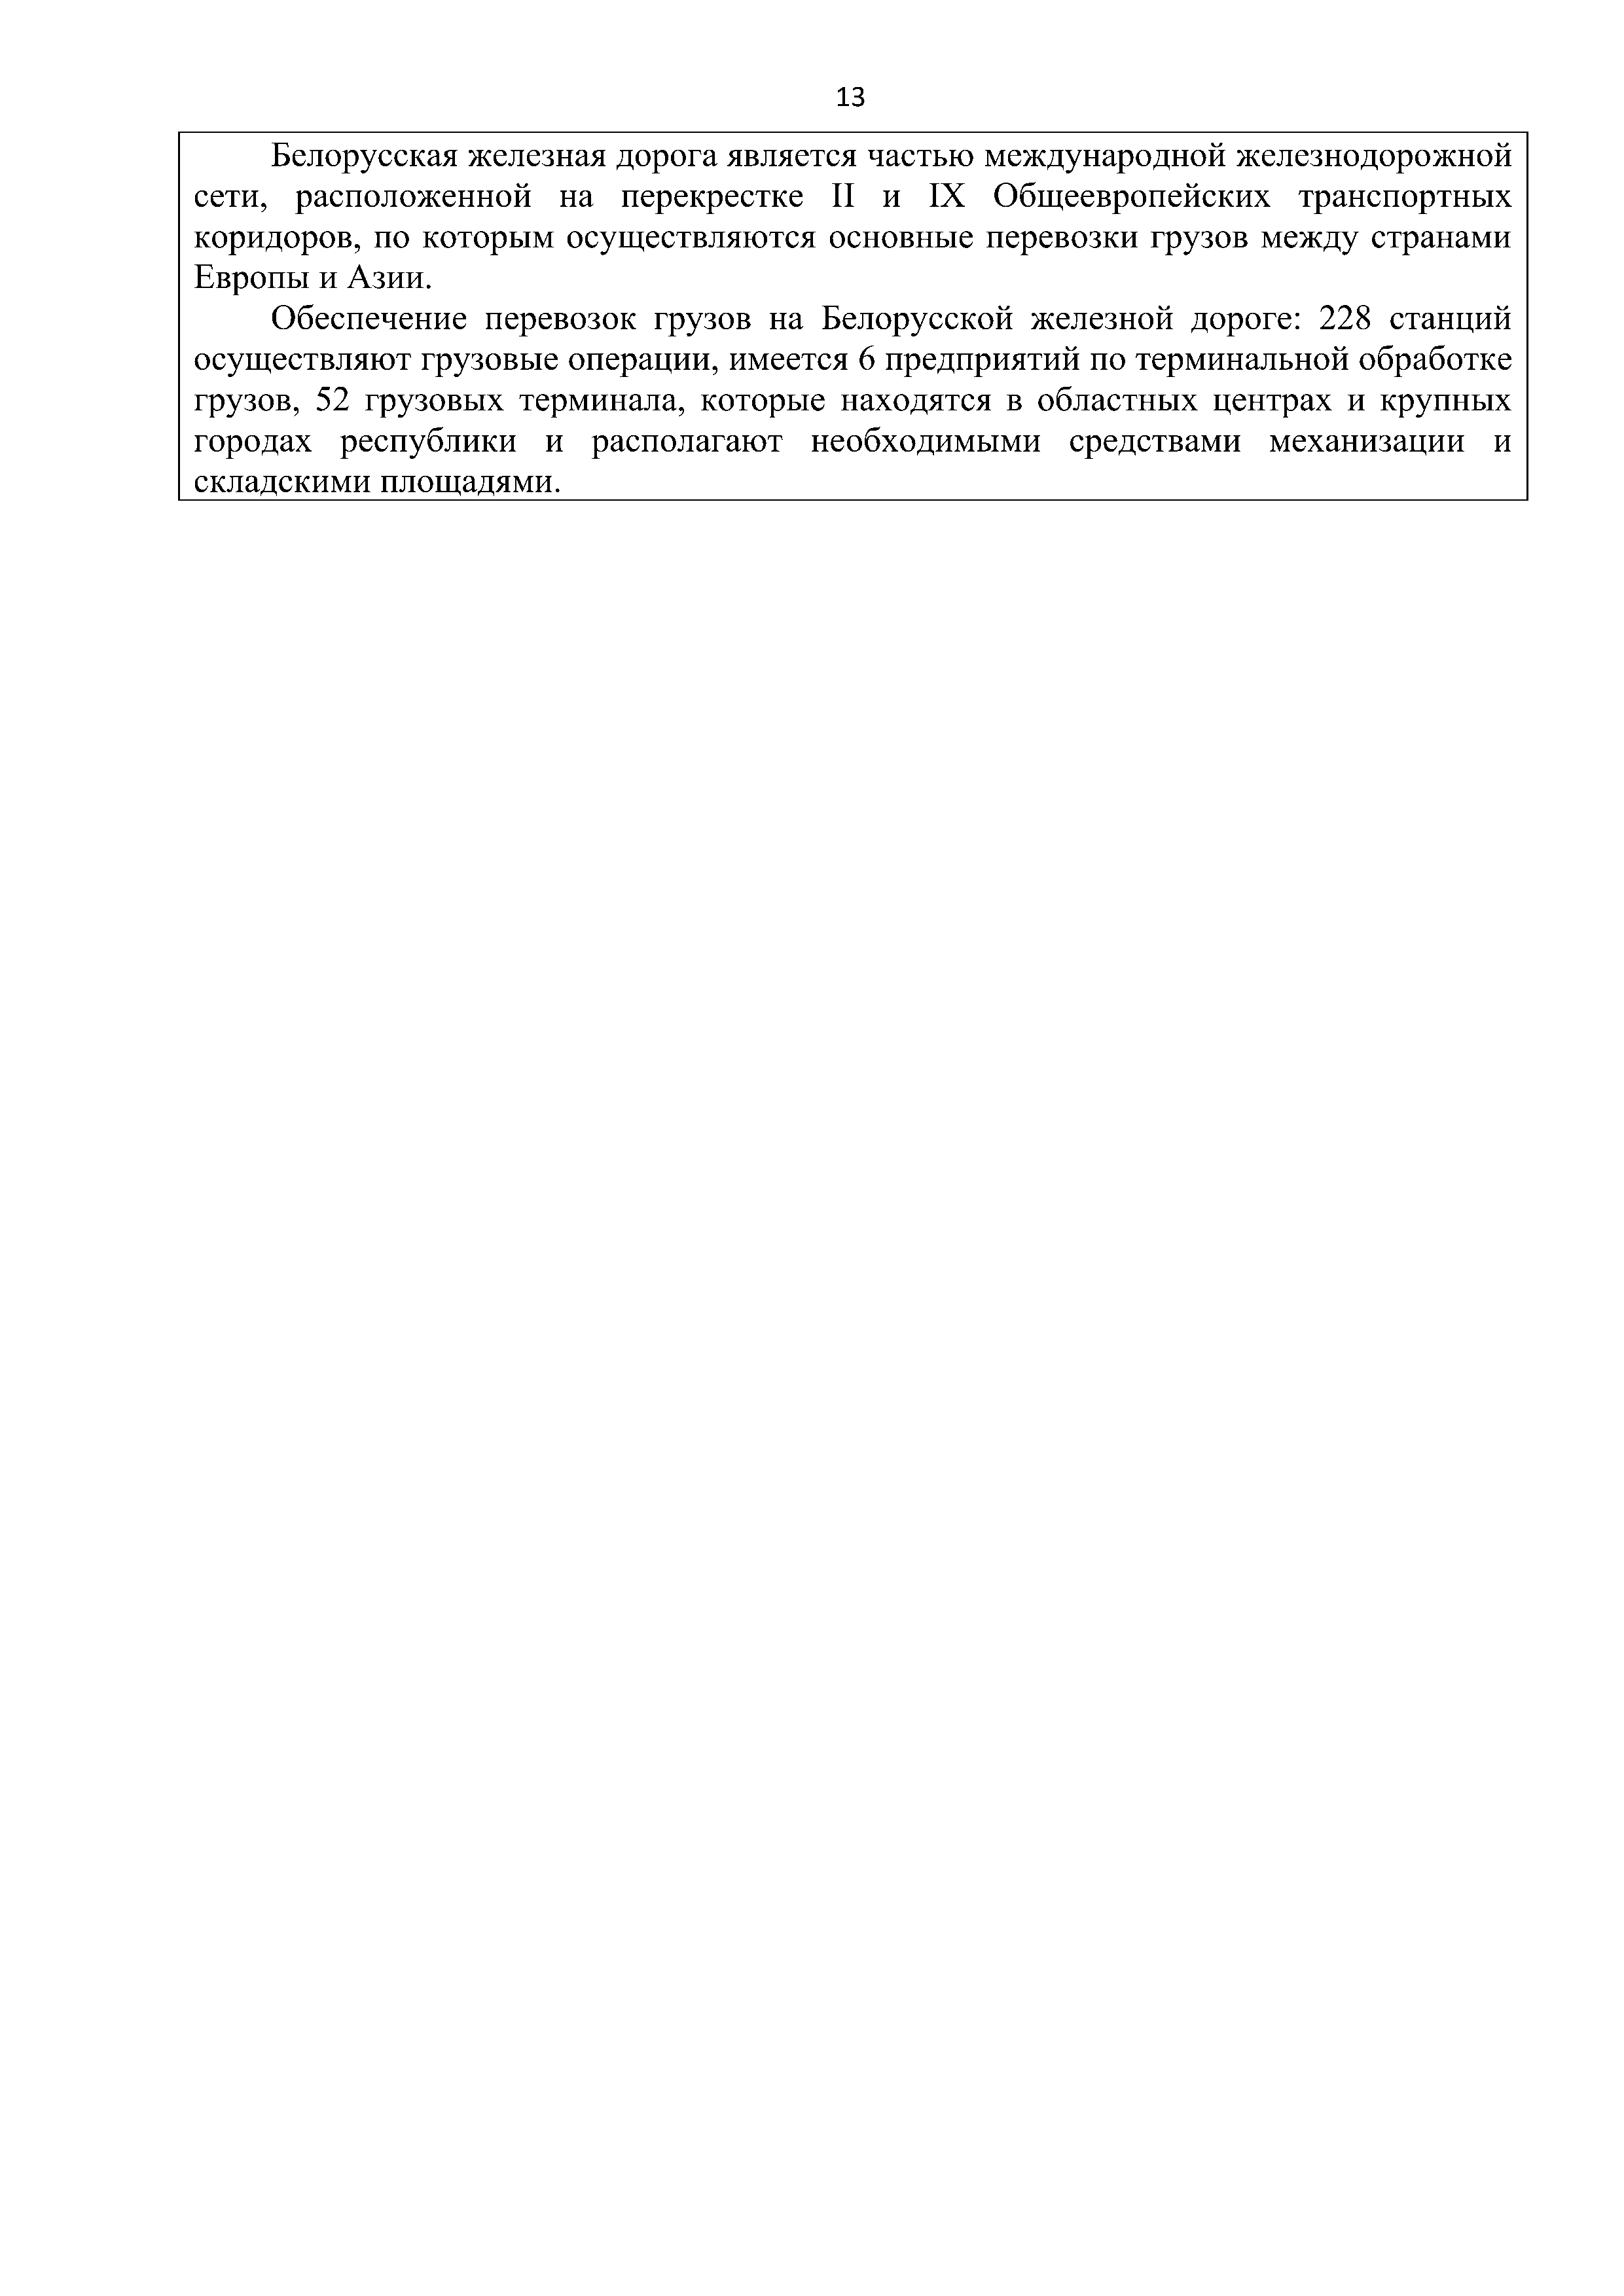 Справочная информация о взаимодействии ОАО «РЖД» с Республикой Беларусь (Страница 13)